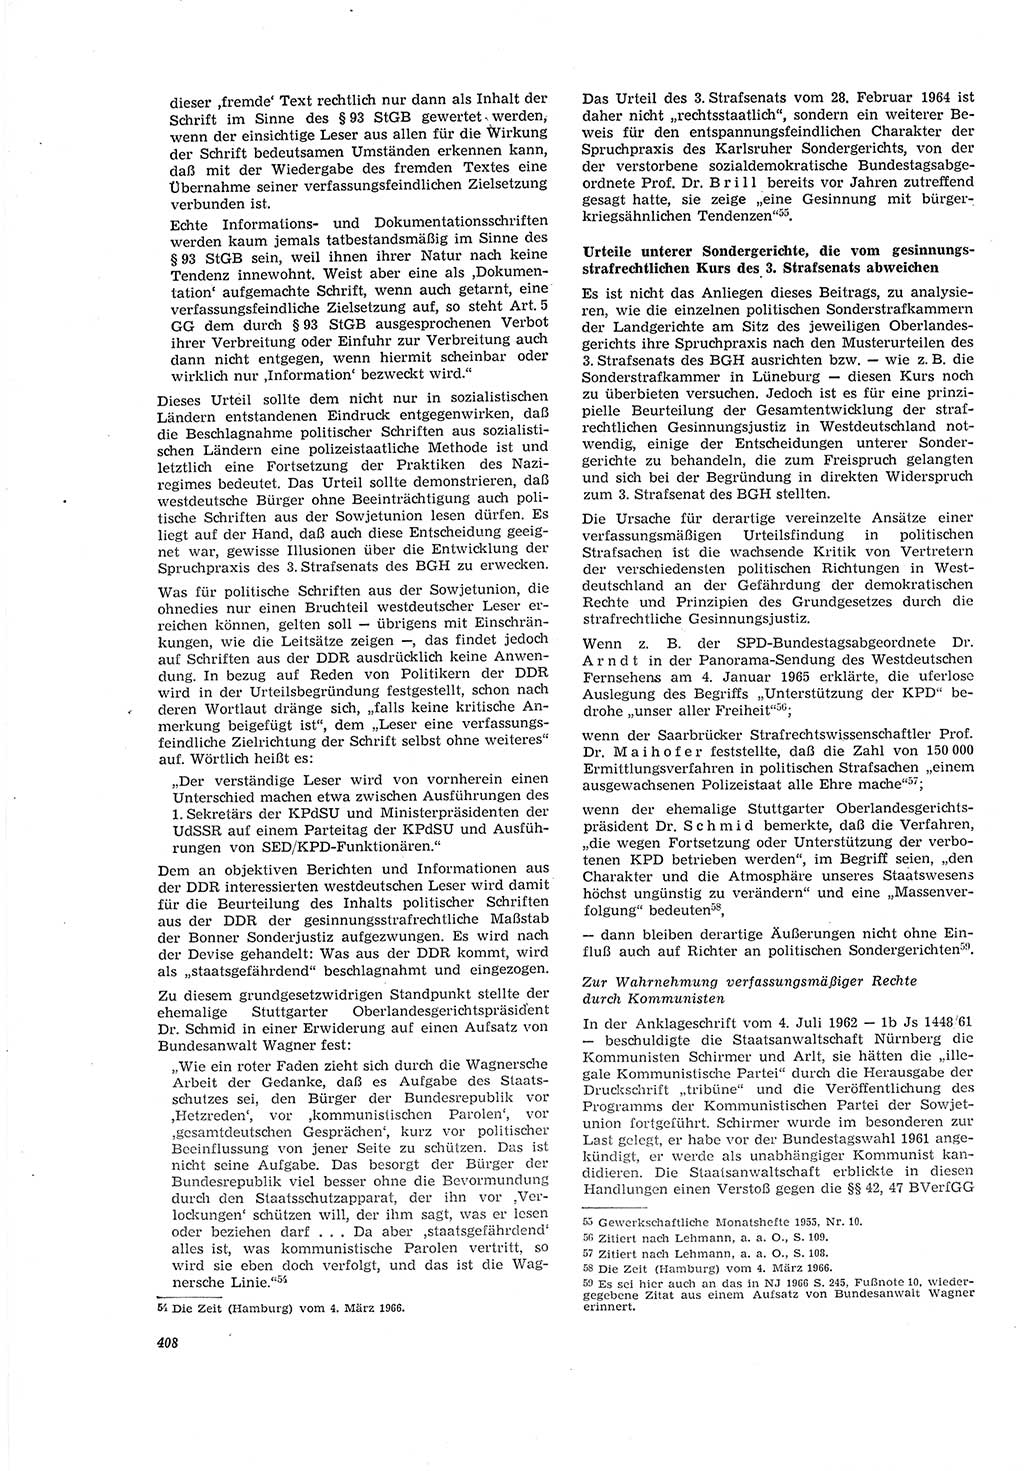 Neue Justiz (NJ), Zeitschrift für Recht und Rechtswissenschaft [Deutsche Demokratische Republik (DDR)], 20. Jahrgang 1966, Seite 408 (NJ DDR 1966, S. 408)